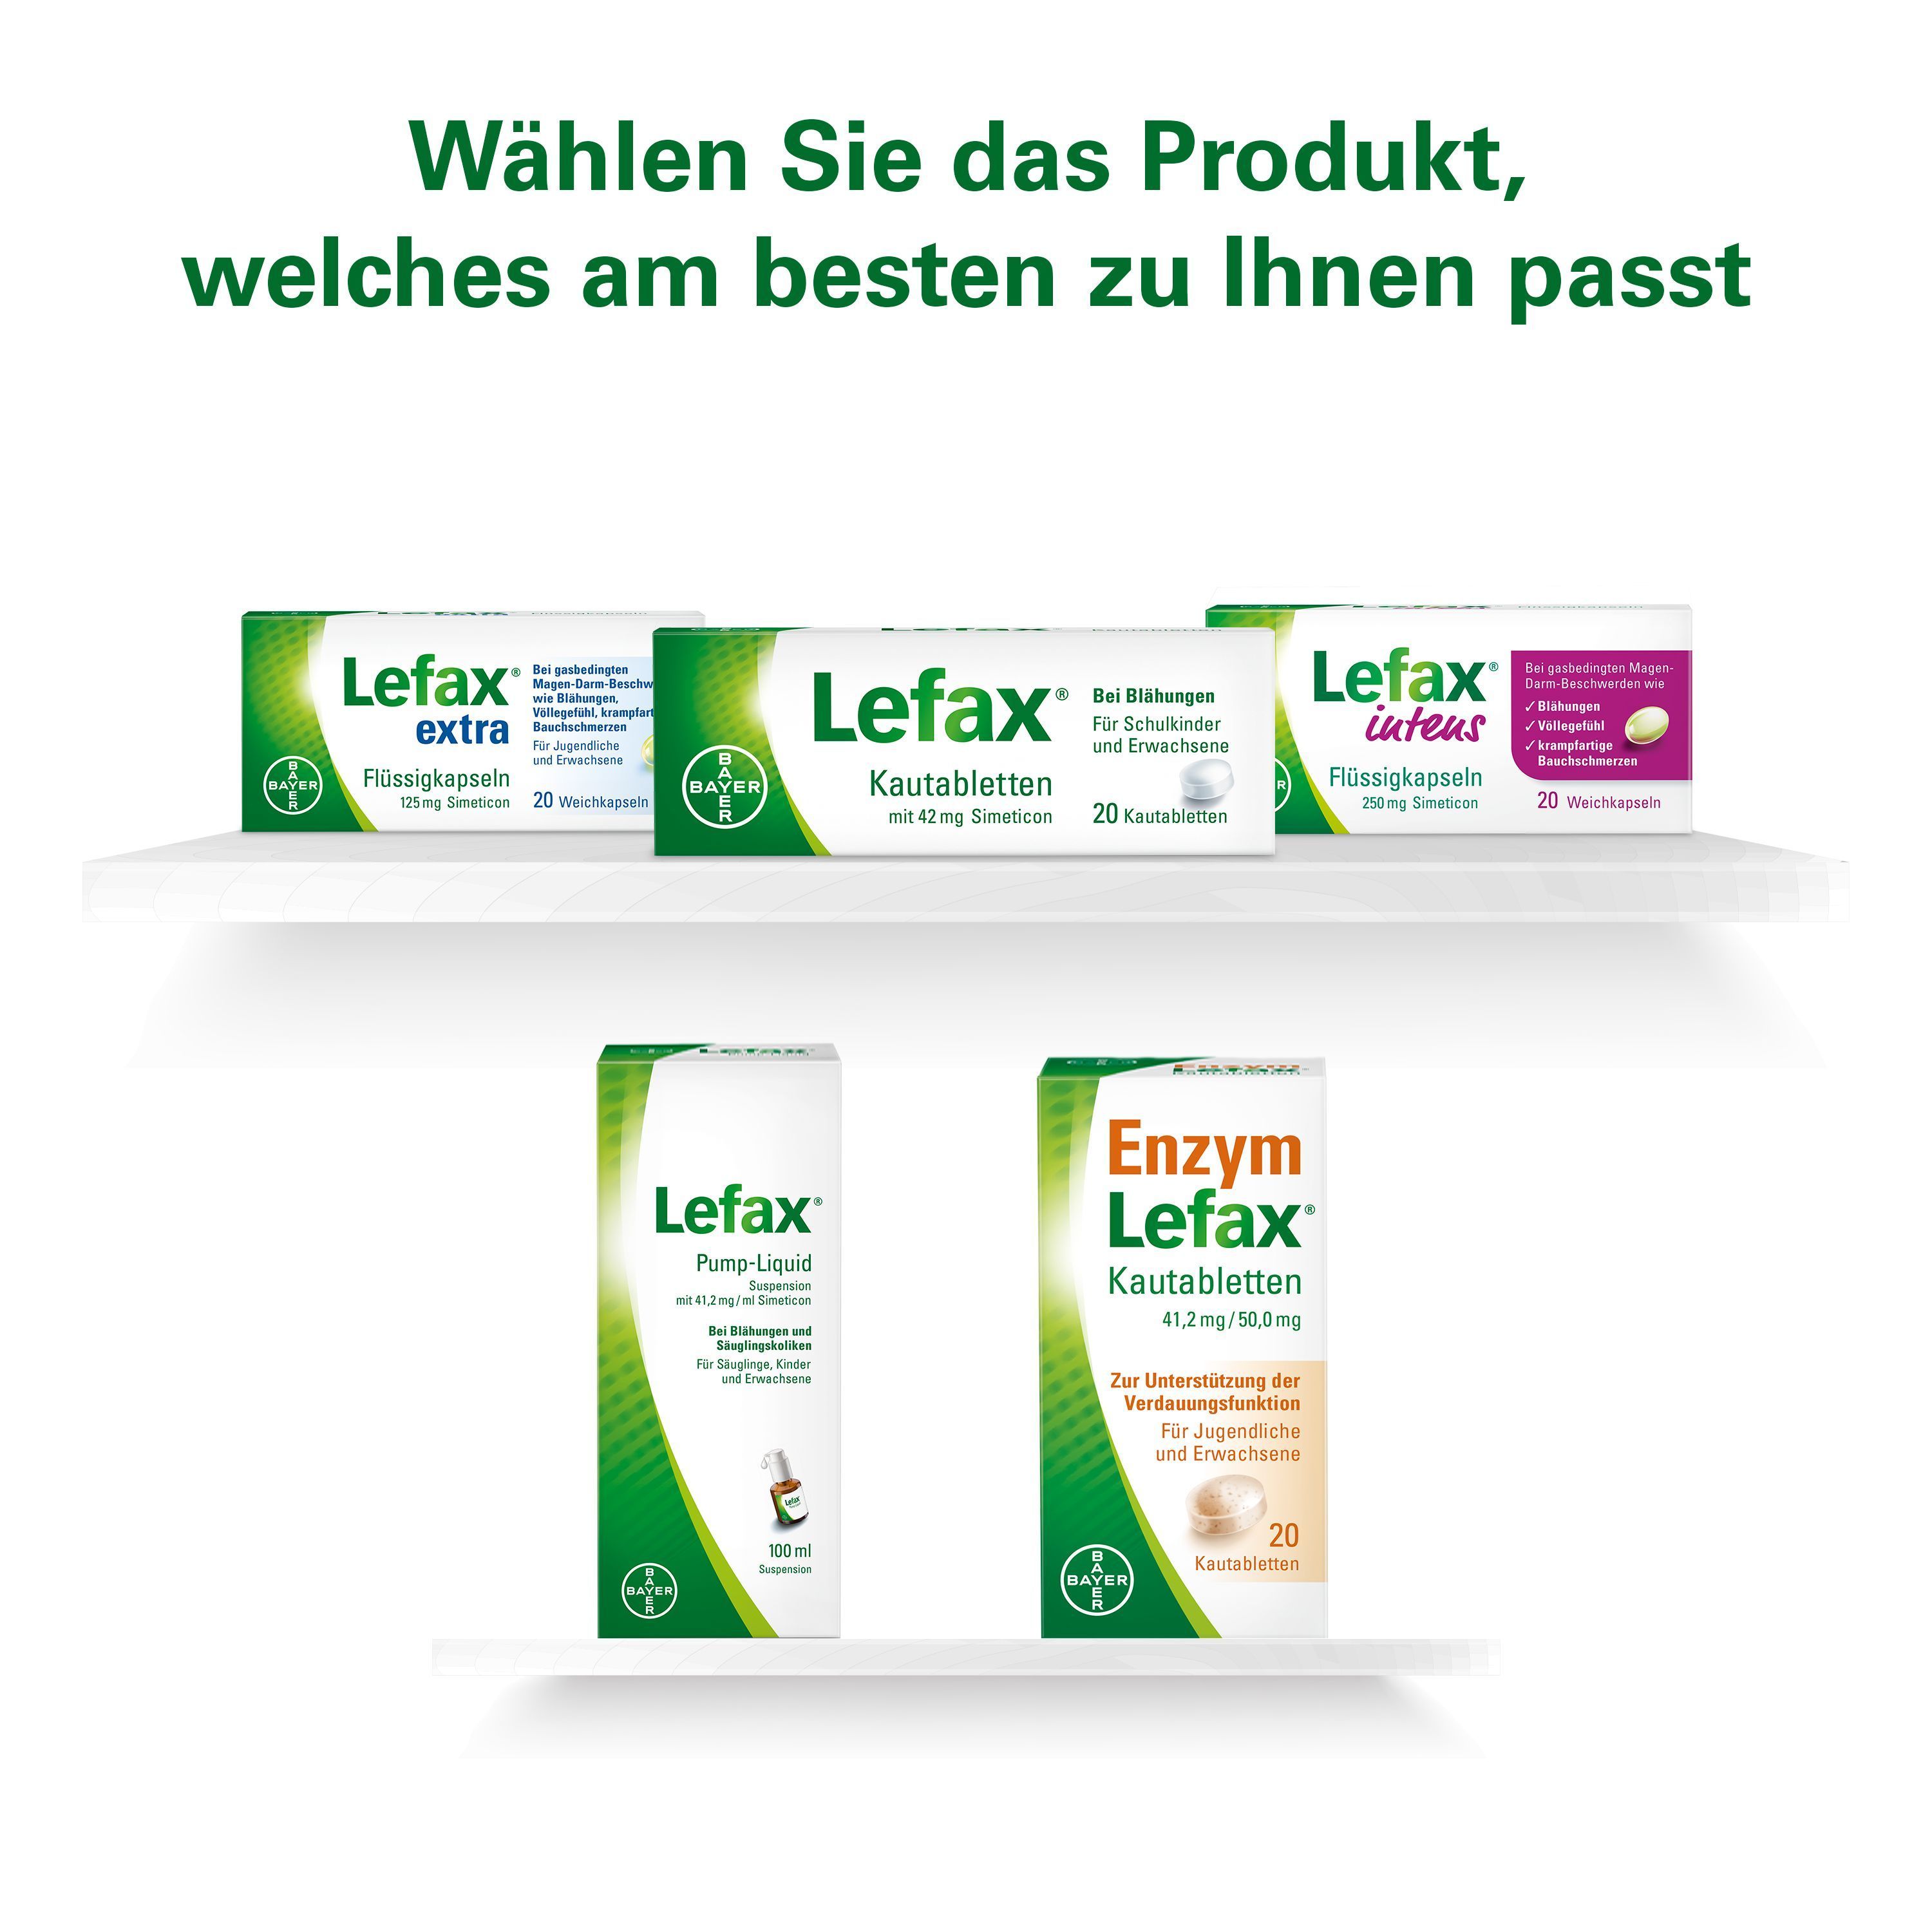 Lefax® Kautabletten gegen Blähungen